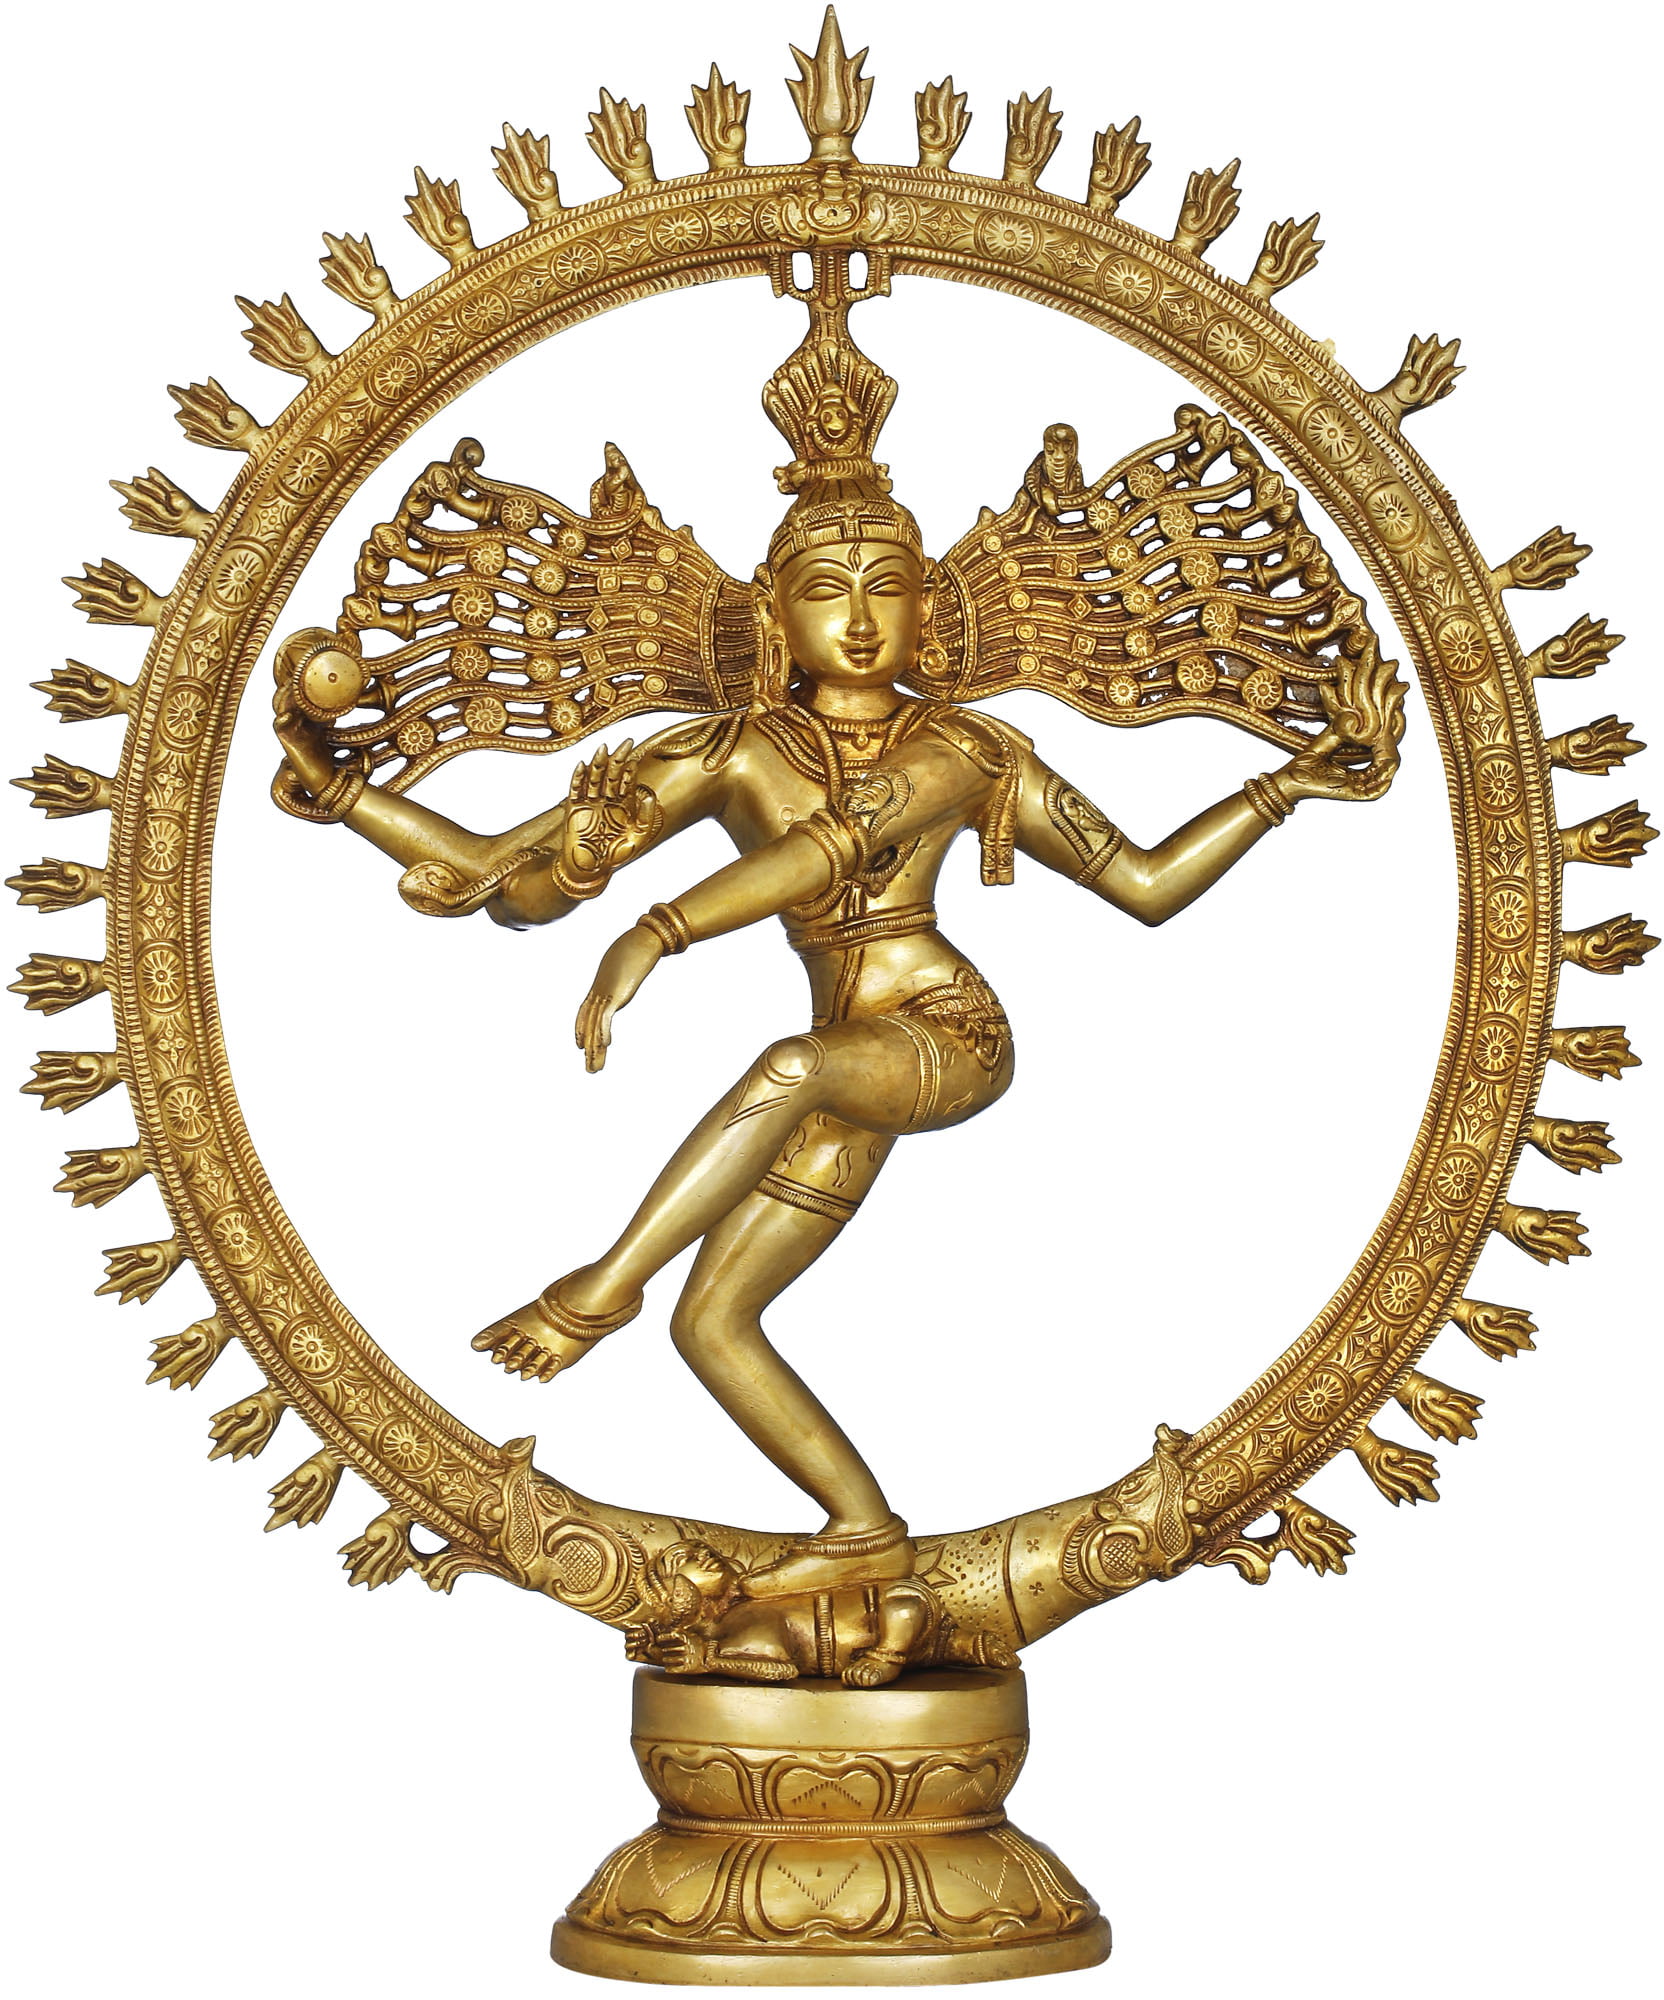 A brief history of Nataraja, the dancing Hindu god Shiva